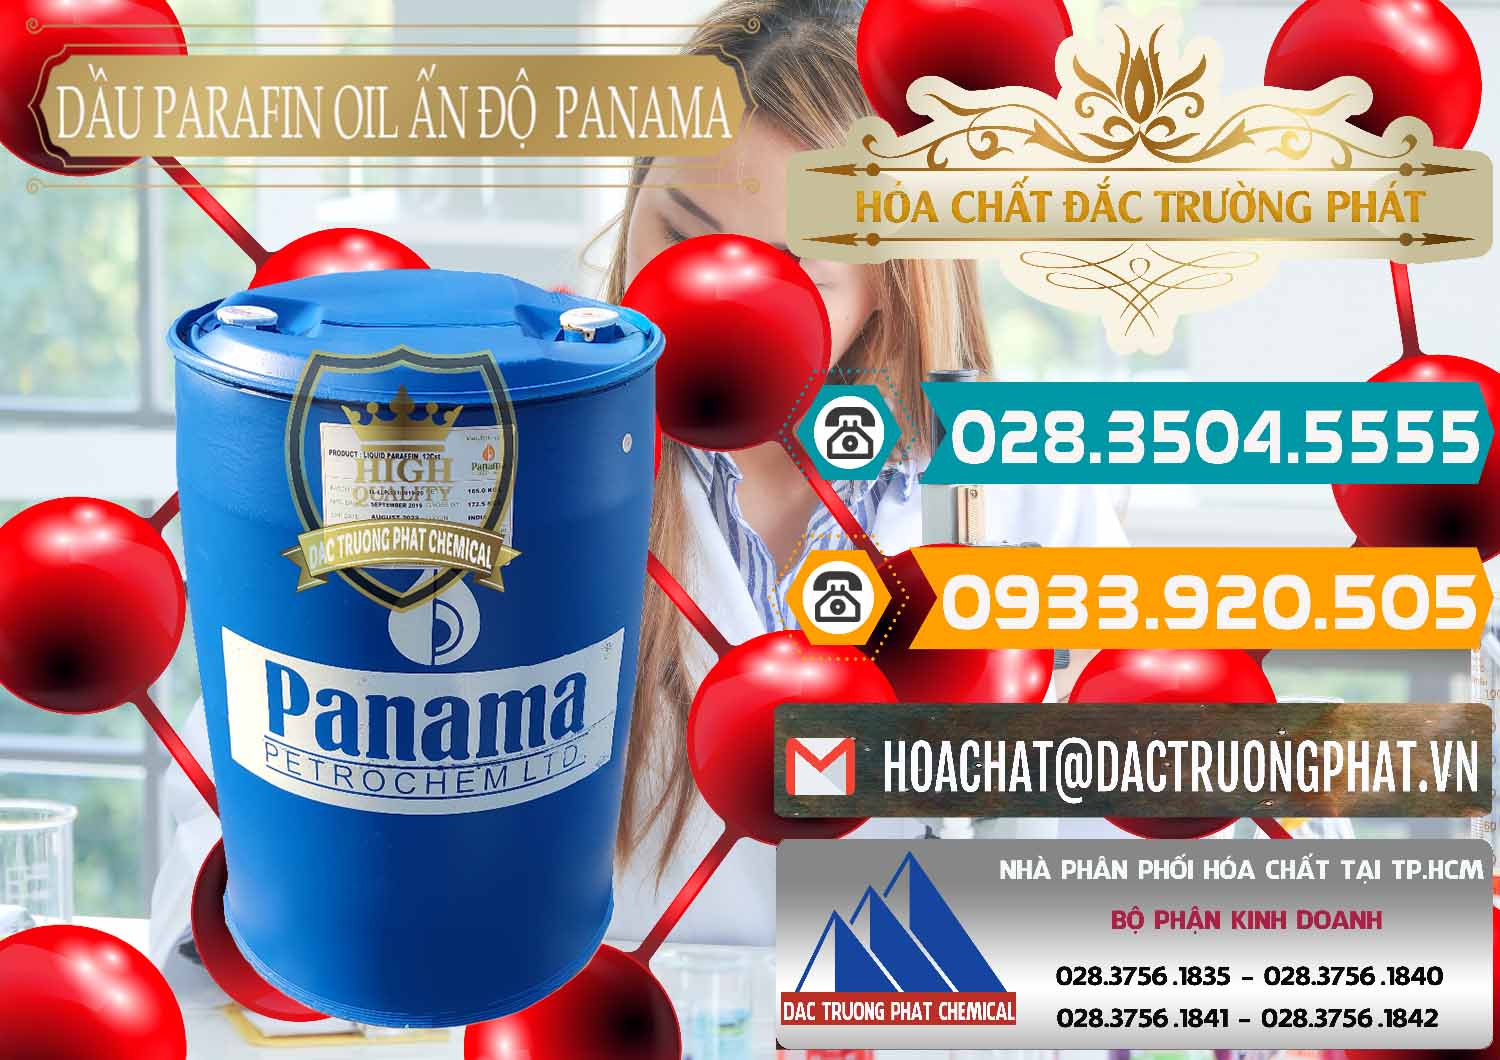 Cty cung cấp ( bán ) Dầu Parafin Oil Panama Ấn Độ India - 0061 - Cty chuyên phân phối và kinh doanh hóa chất tại TP.HCM - congtyhoachat.vn